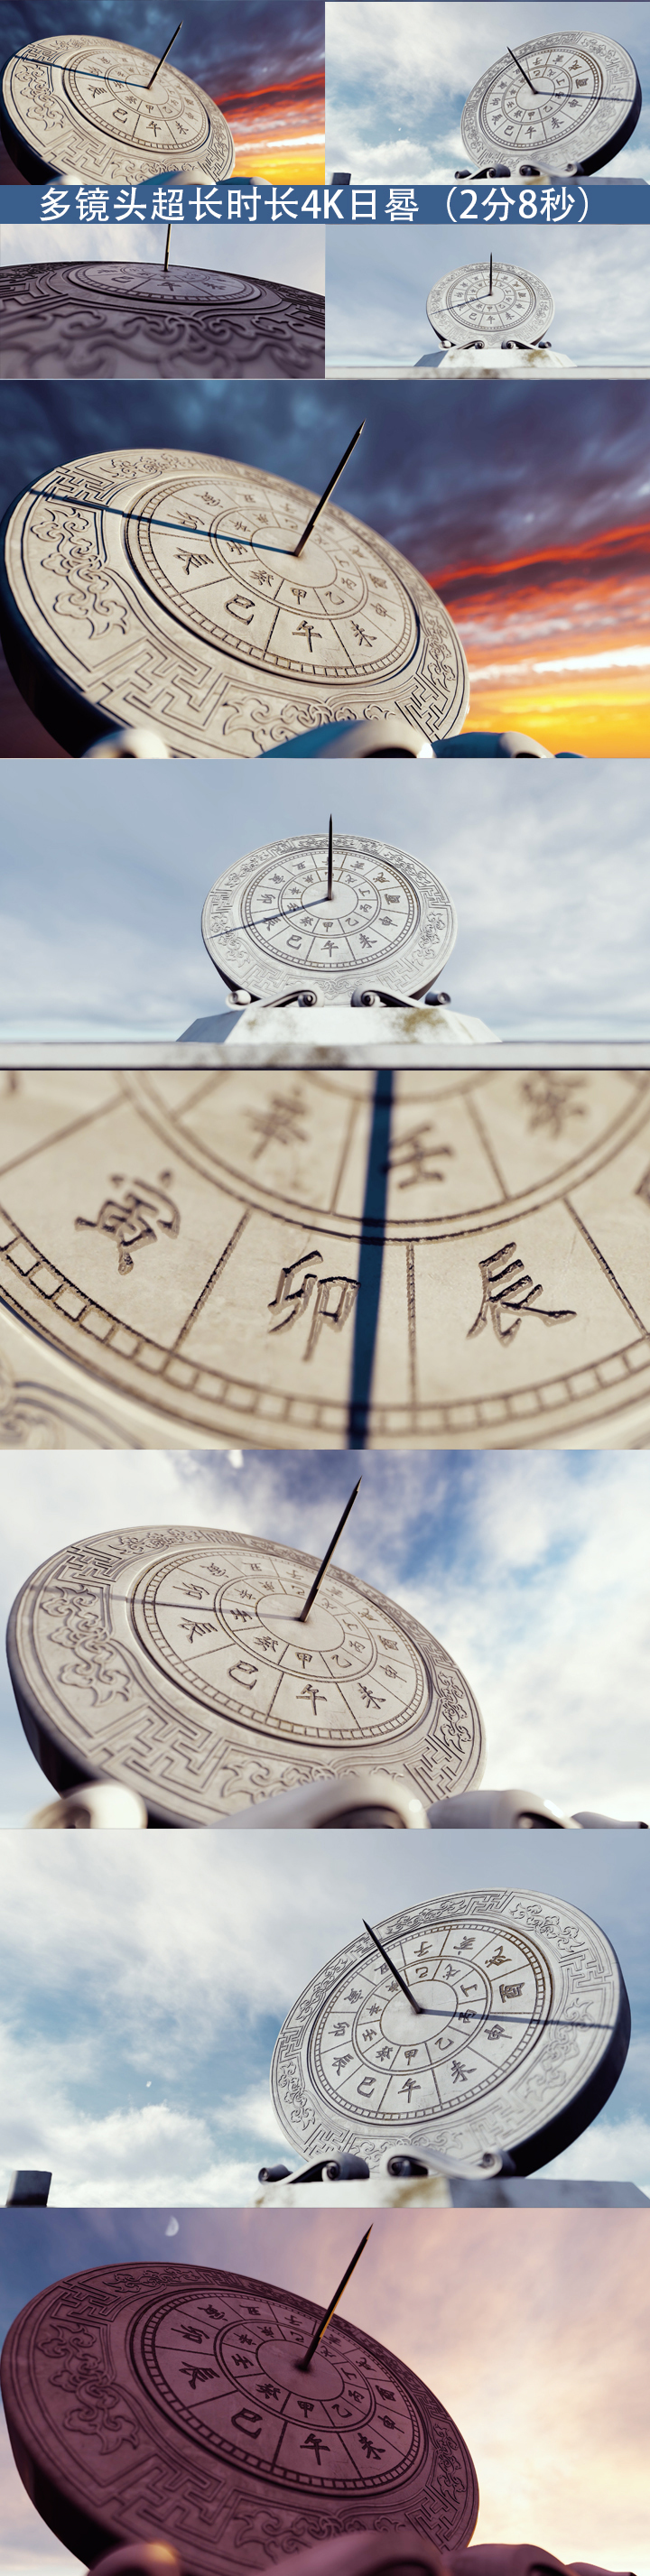 多镜头中国风传统文化日晷时间流逝变化